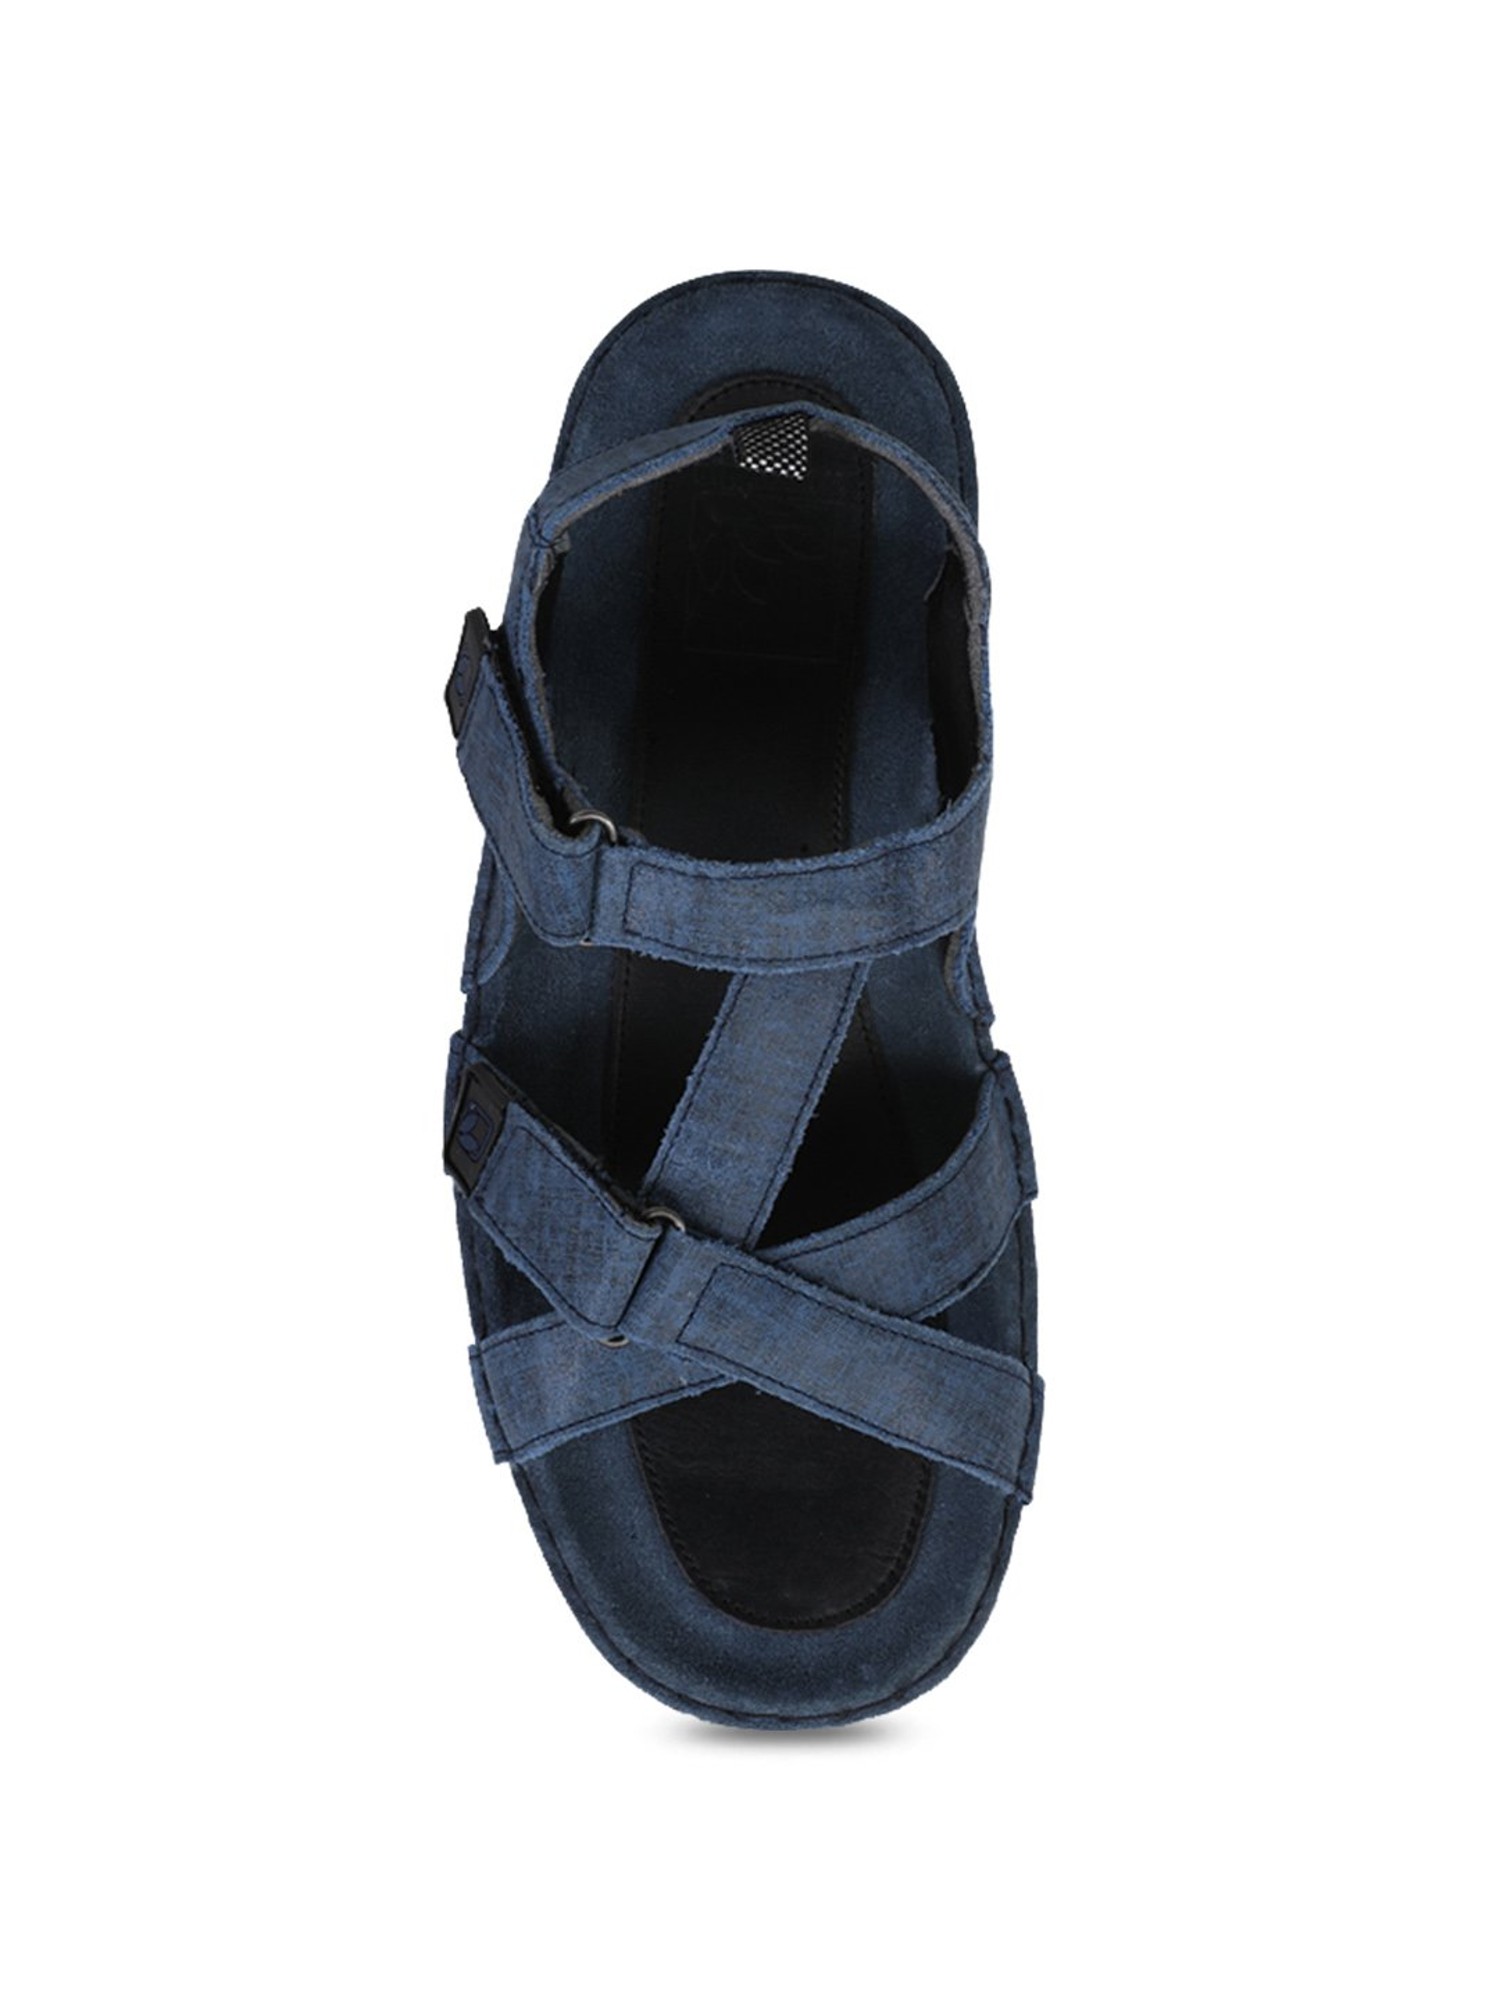 Buy DENIM Color WOODLAND Men Blue Sandals Online at Best Price